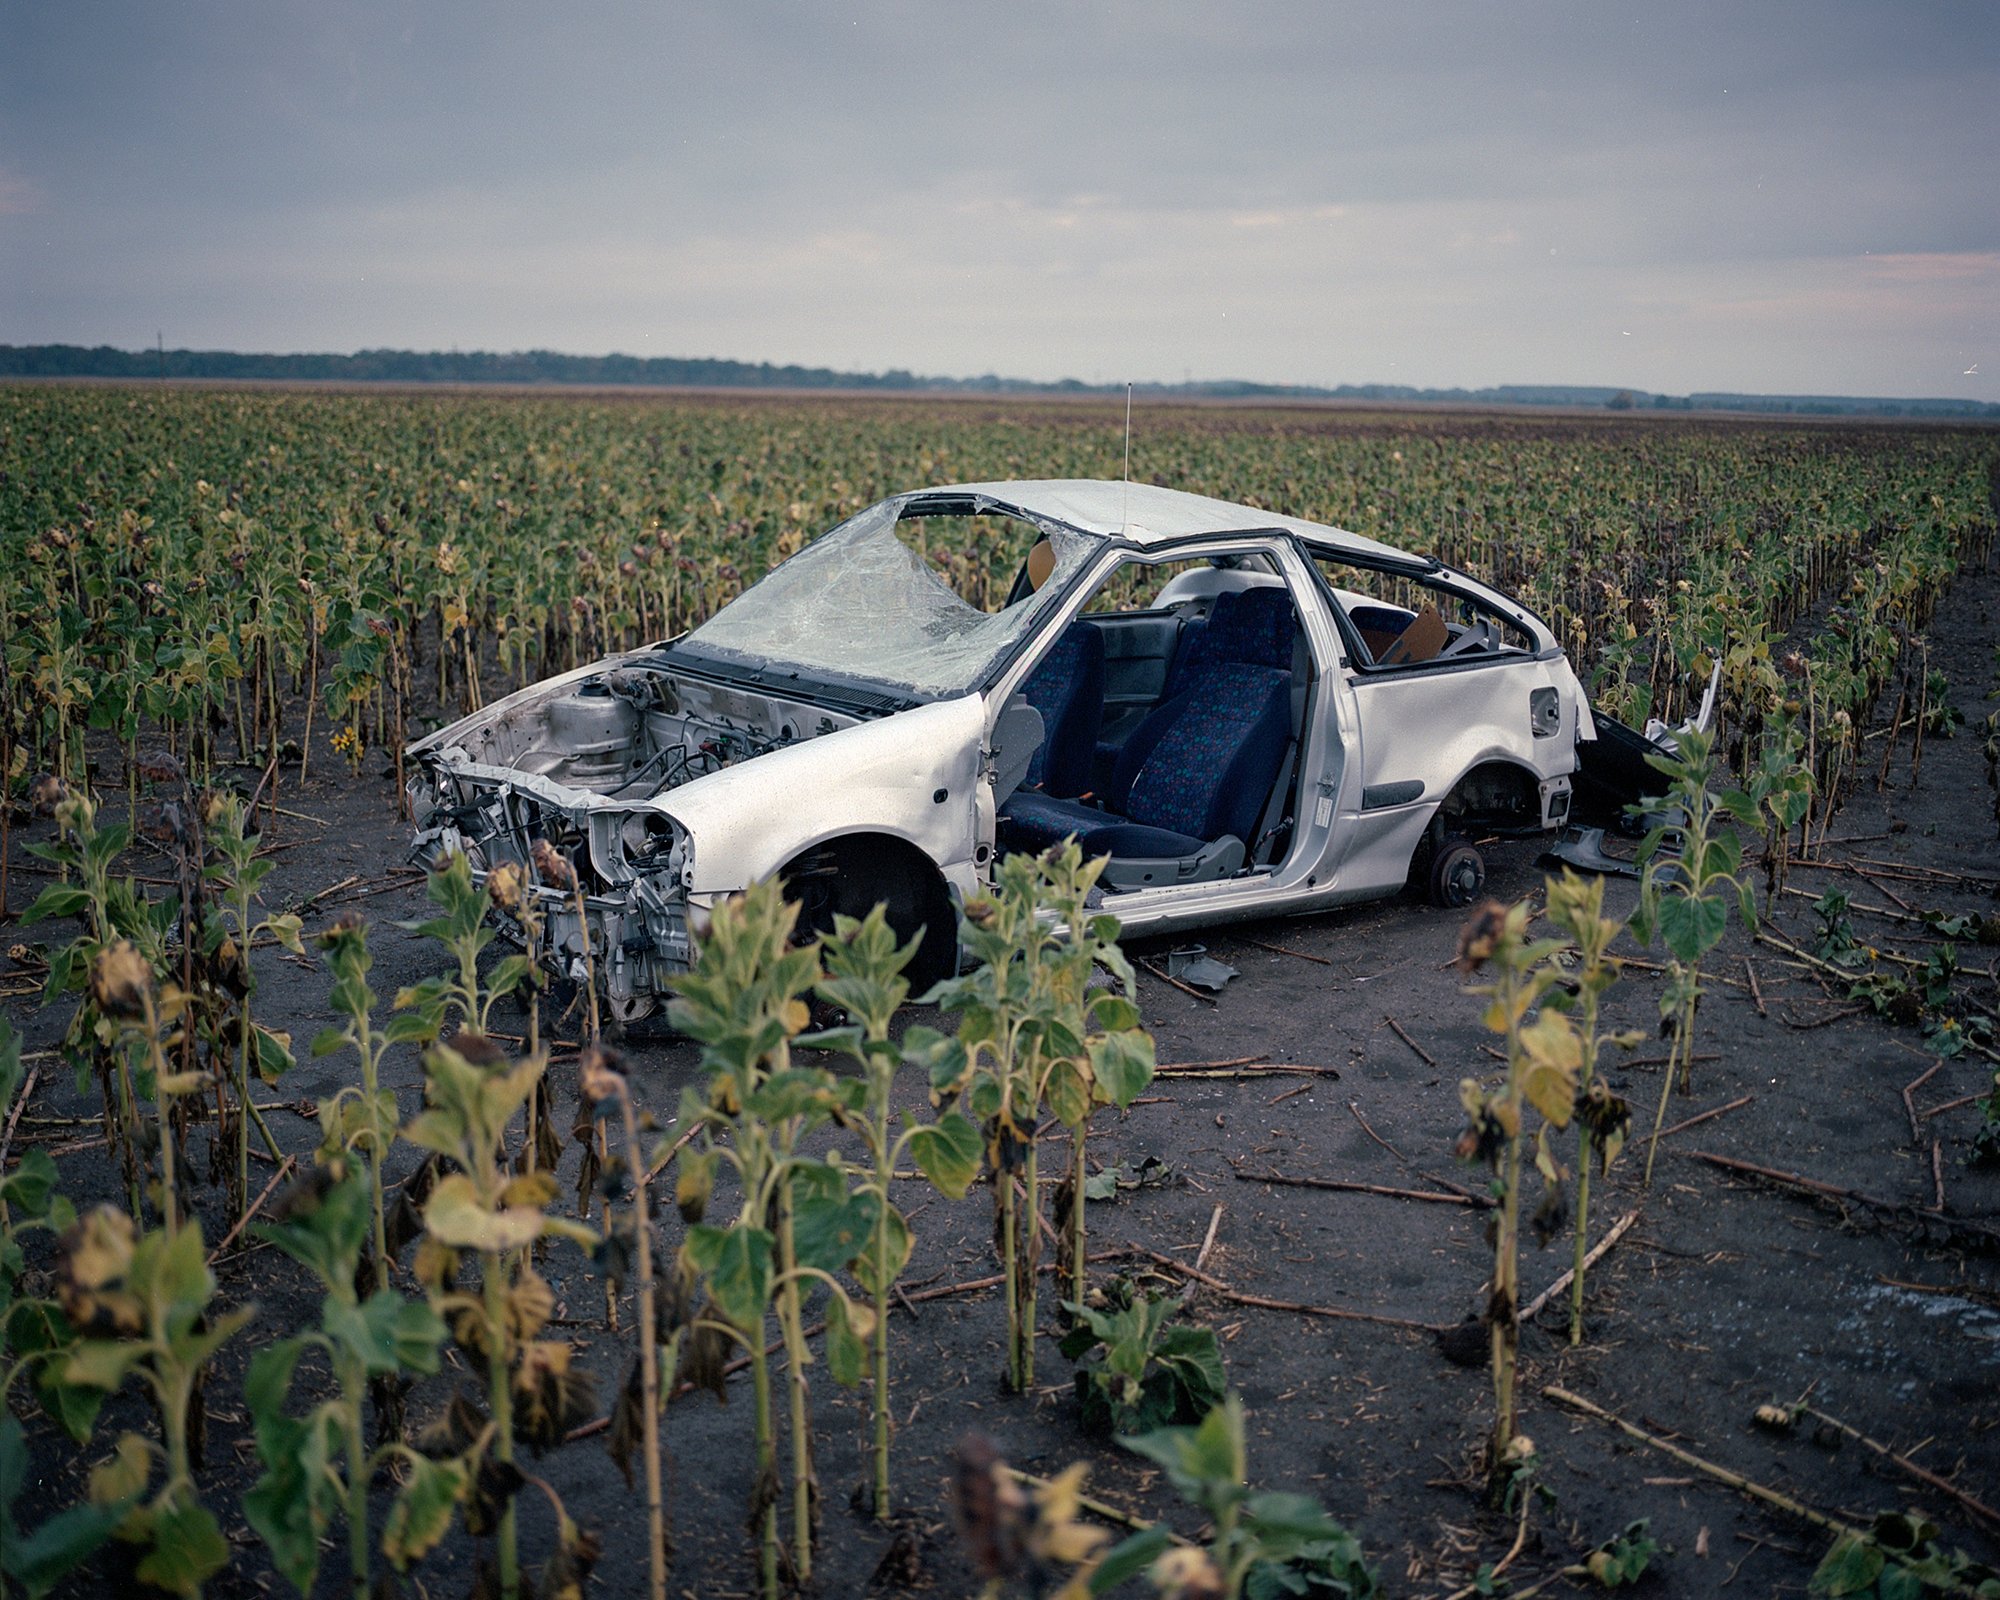  Broken car on sunflower field Martfű, Hungary, 2022 